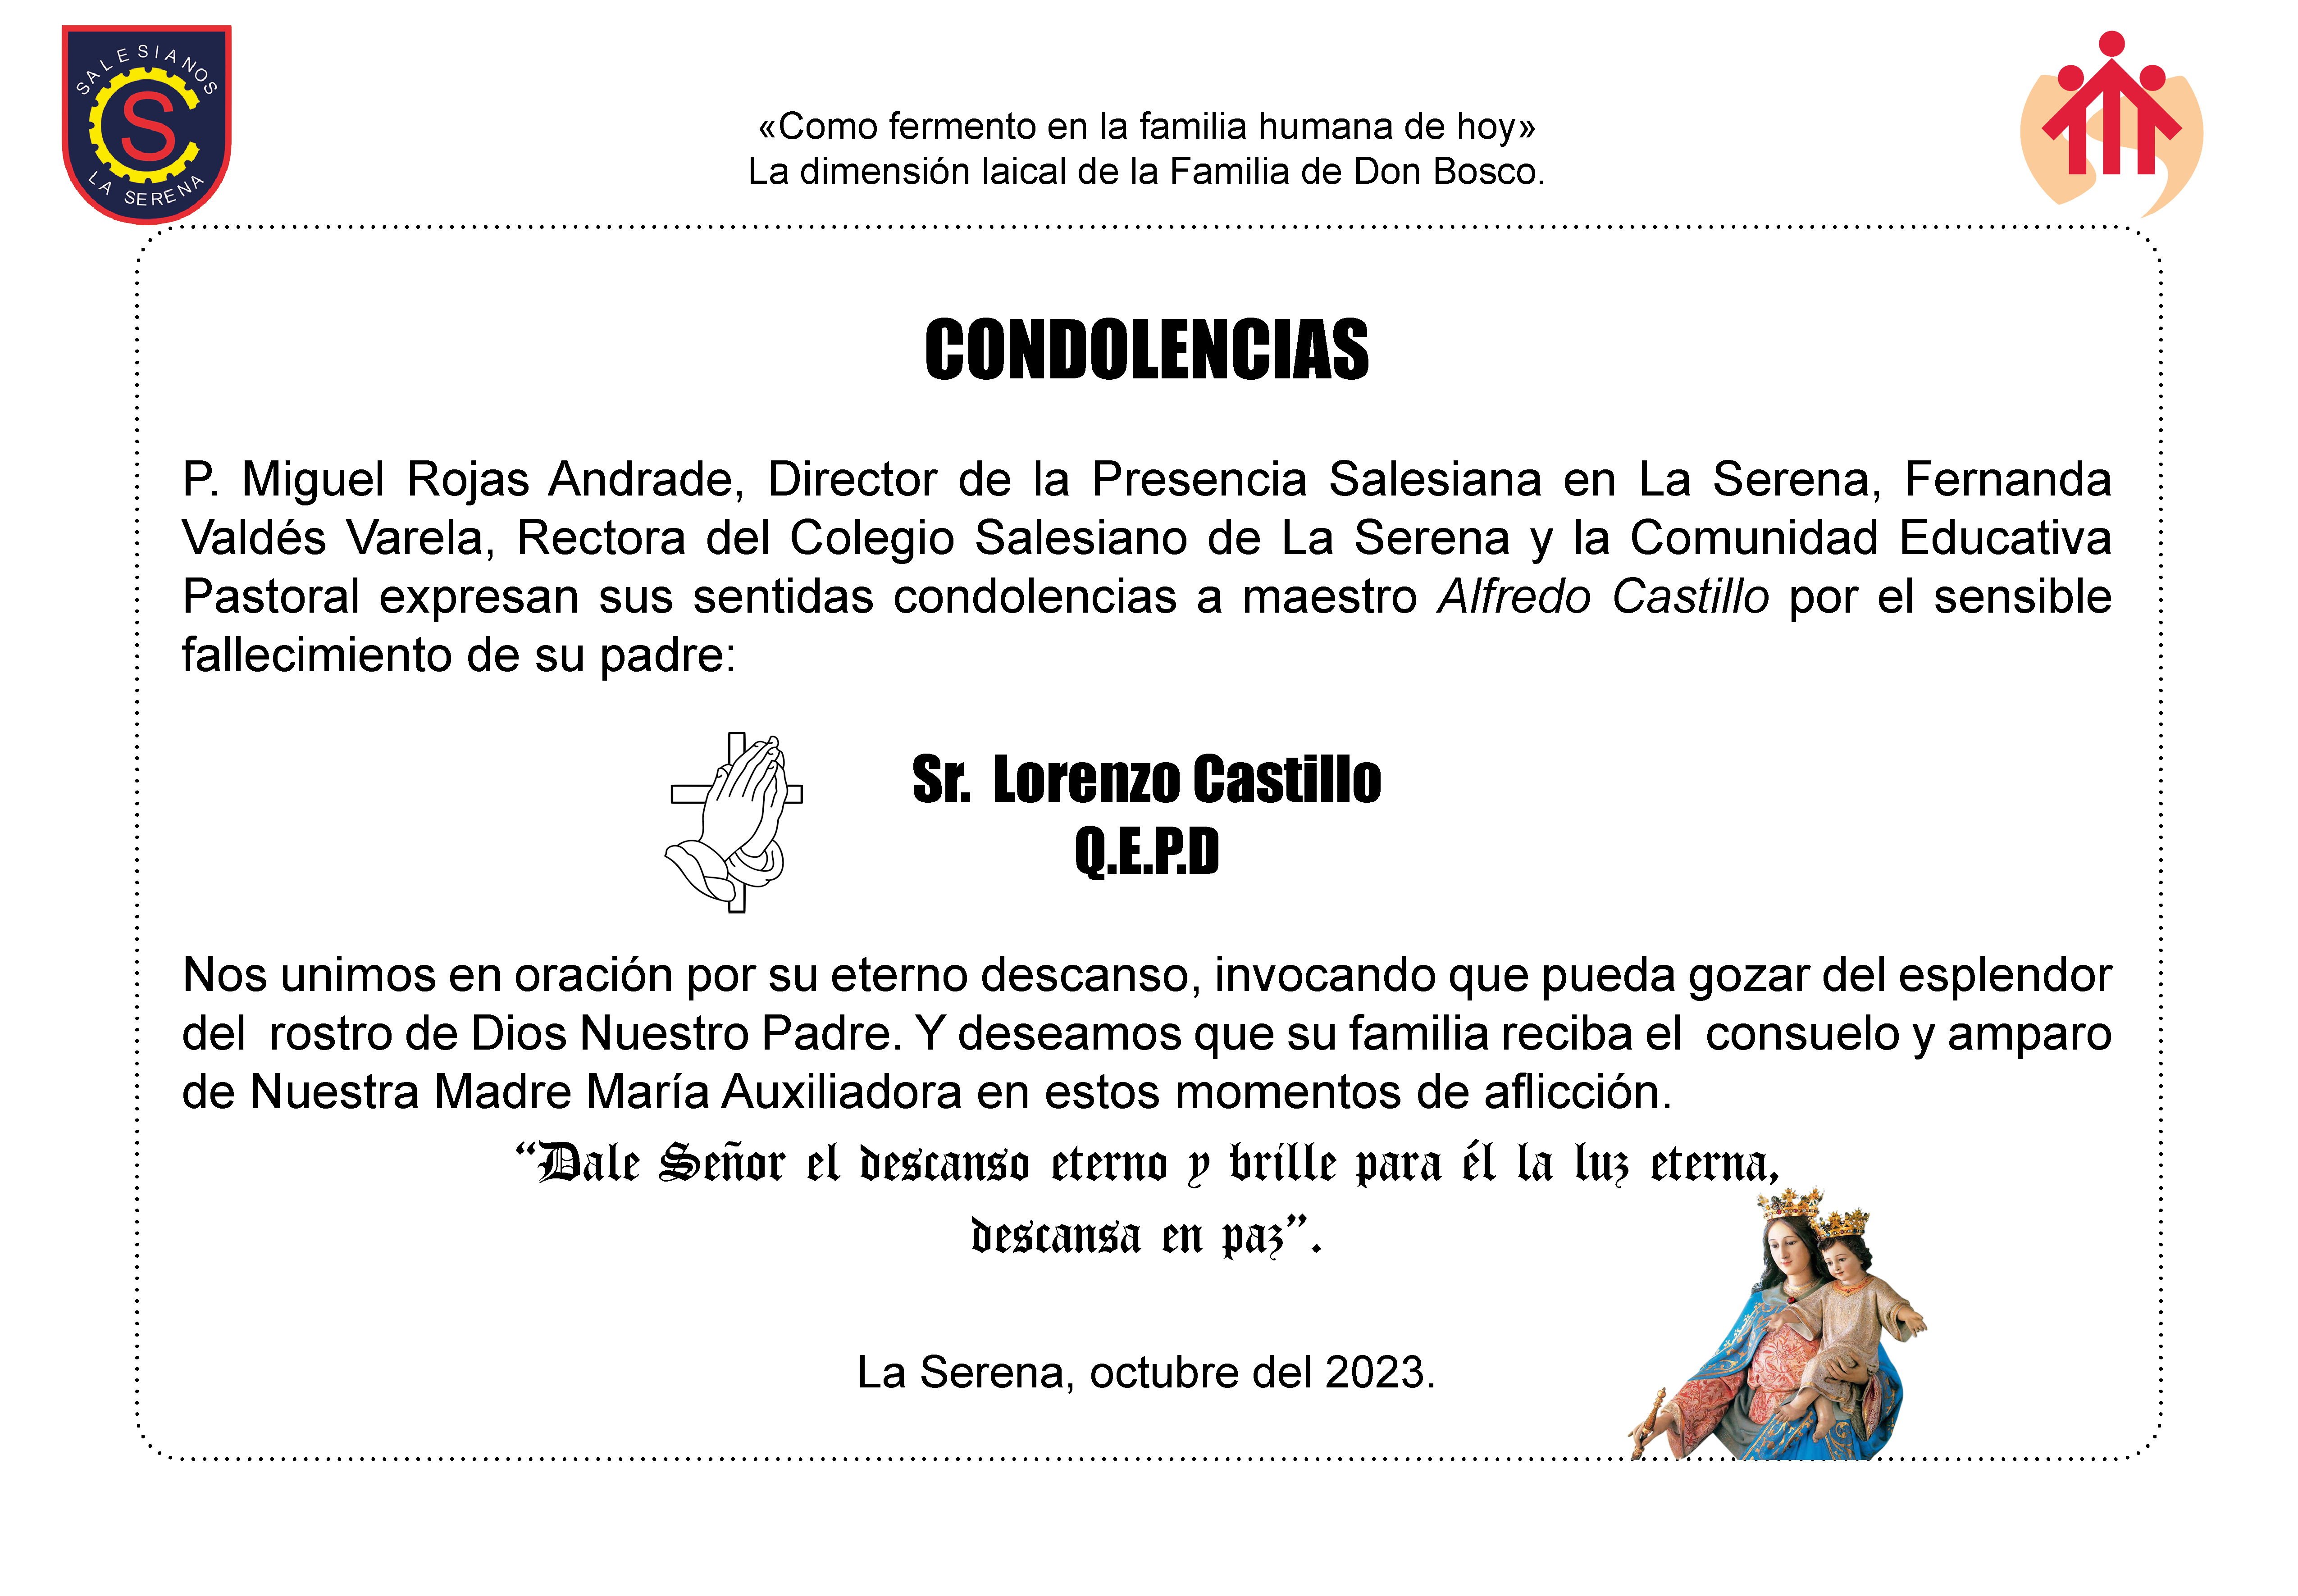 Condolencias Alfredo Castillo